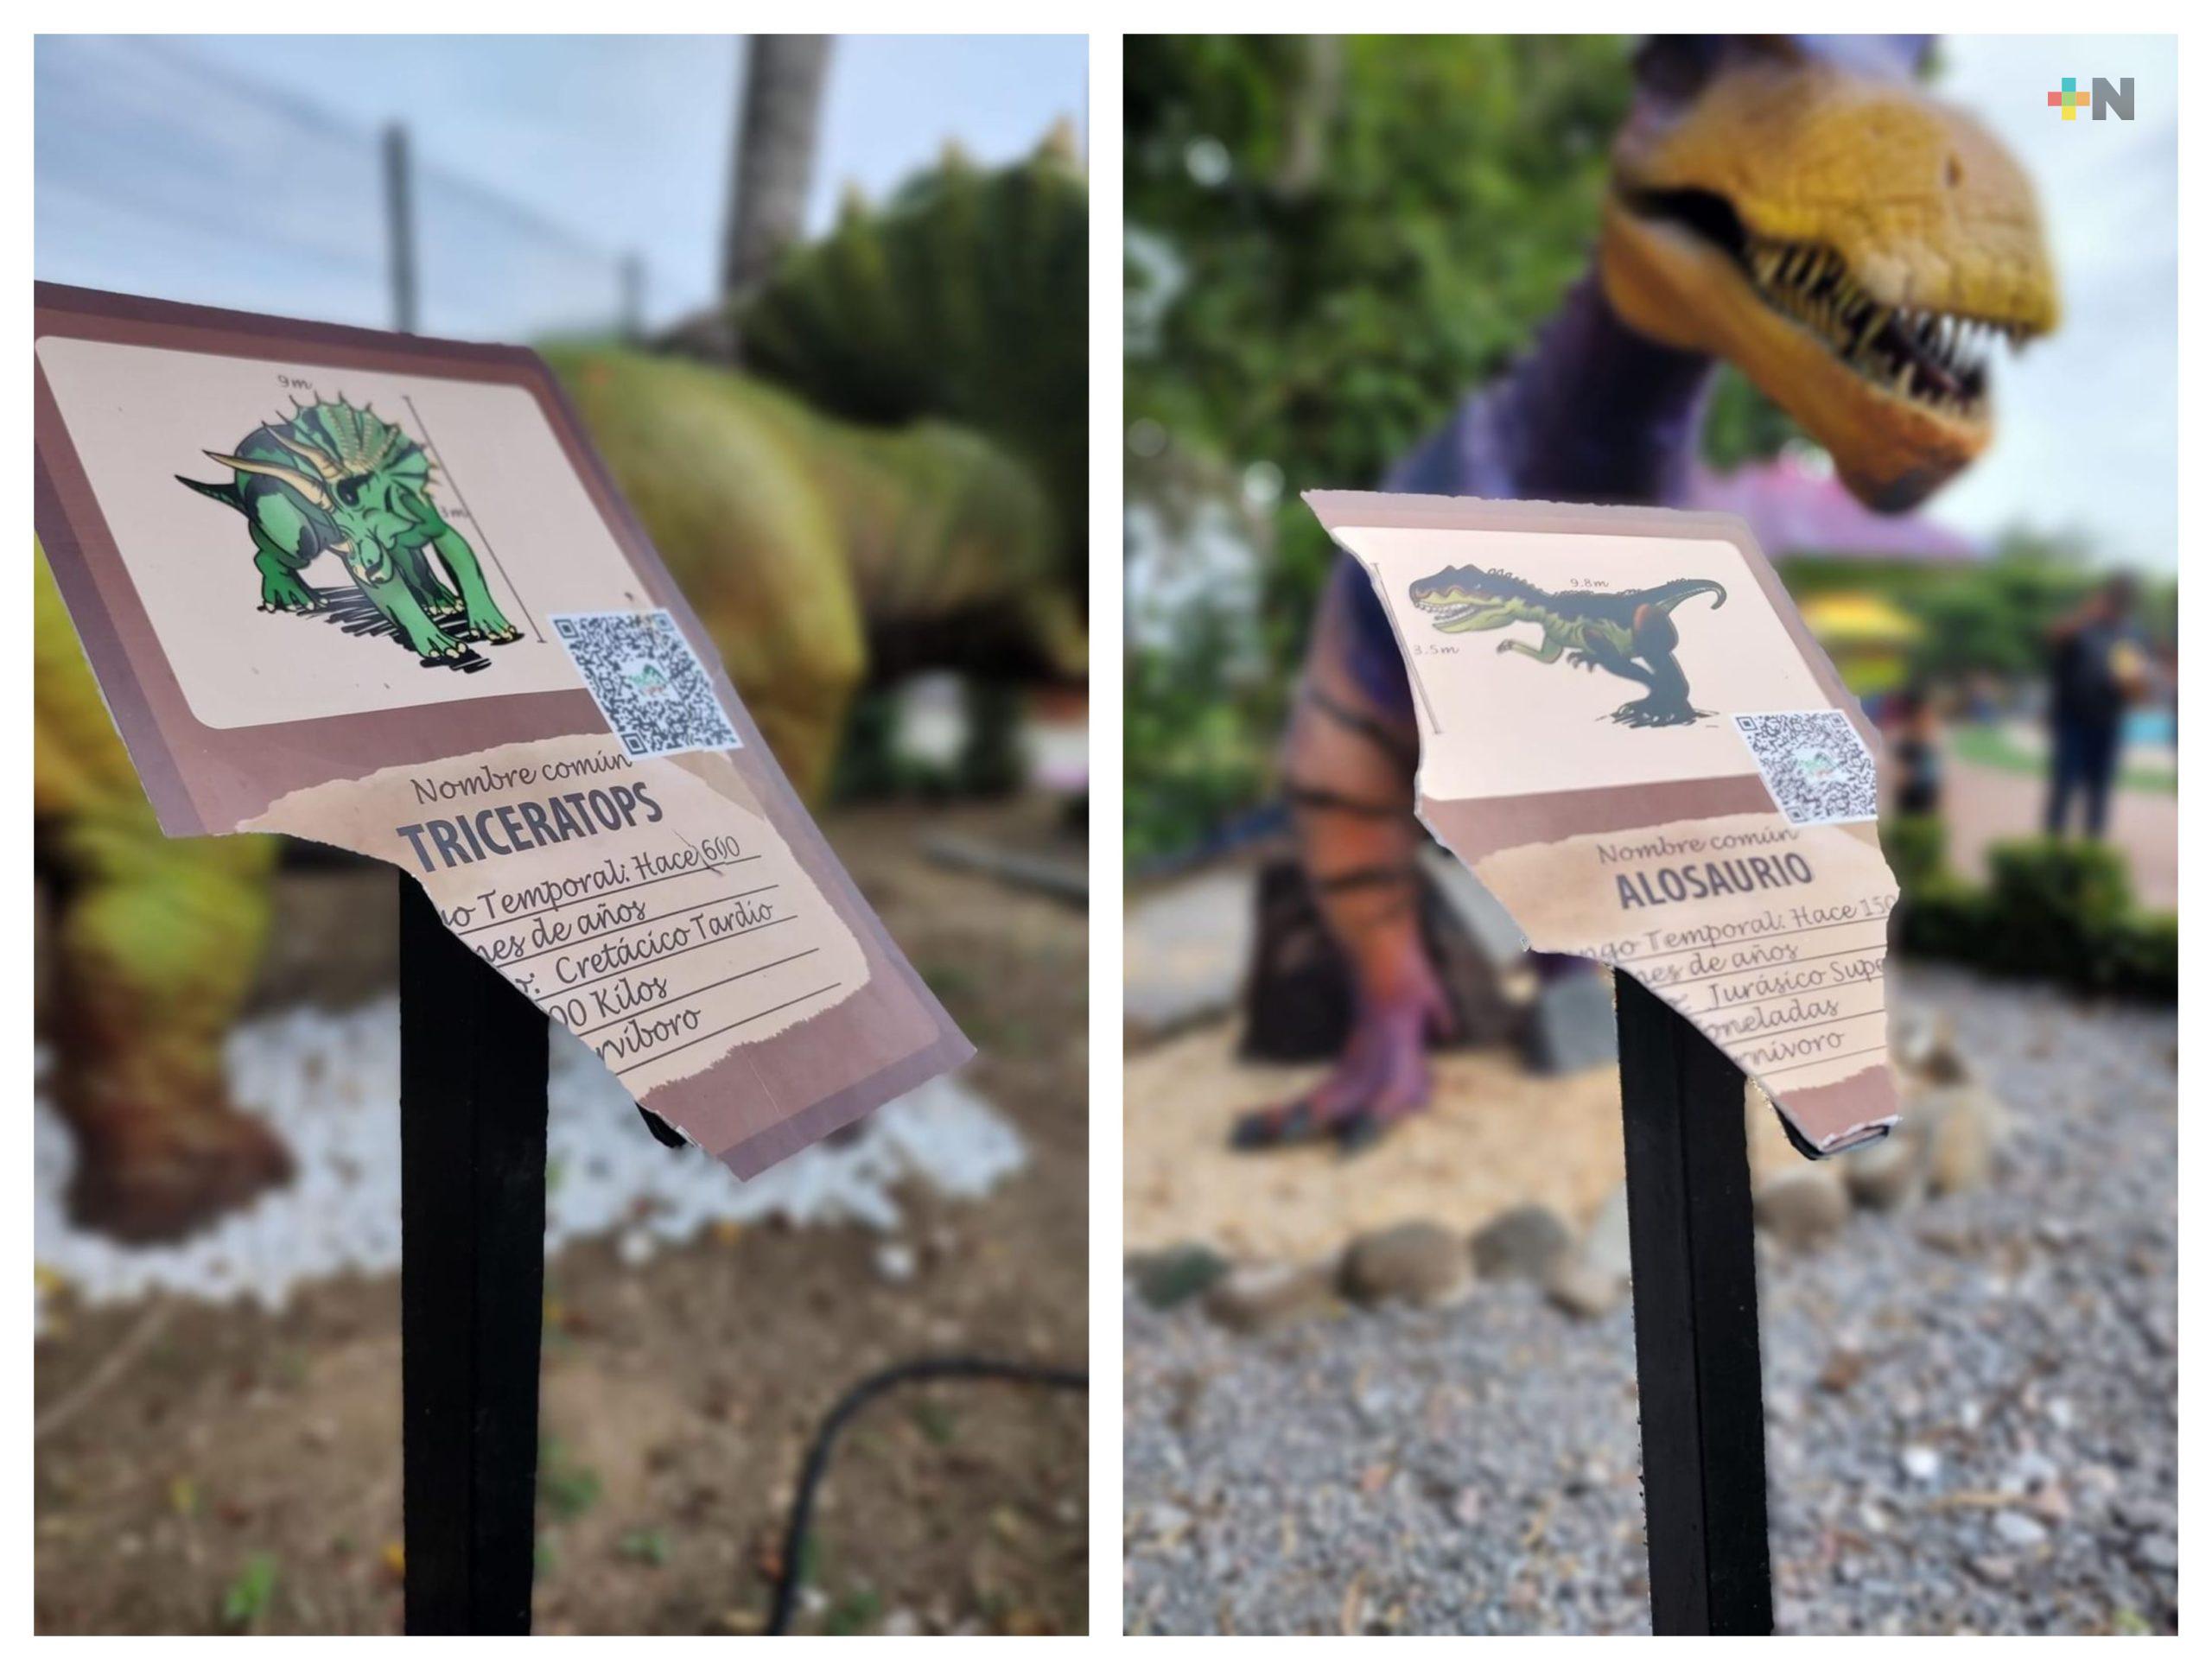 Varias placas informativas de dinosaurios en Isla Jurásica muestran daño intencional